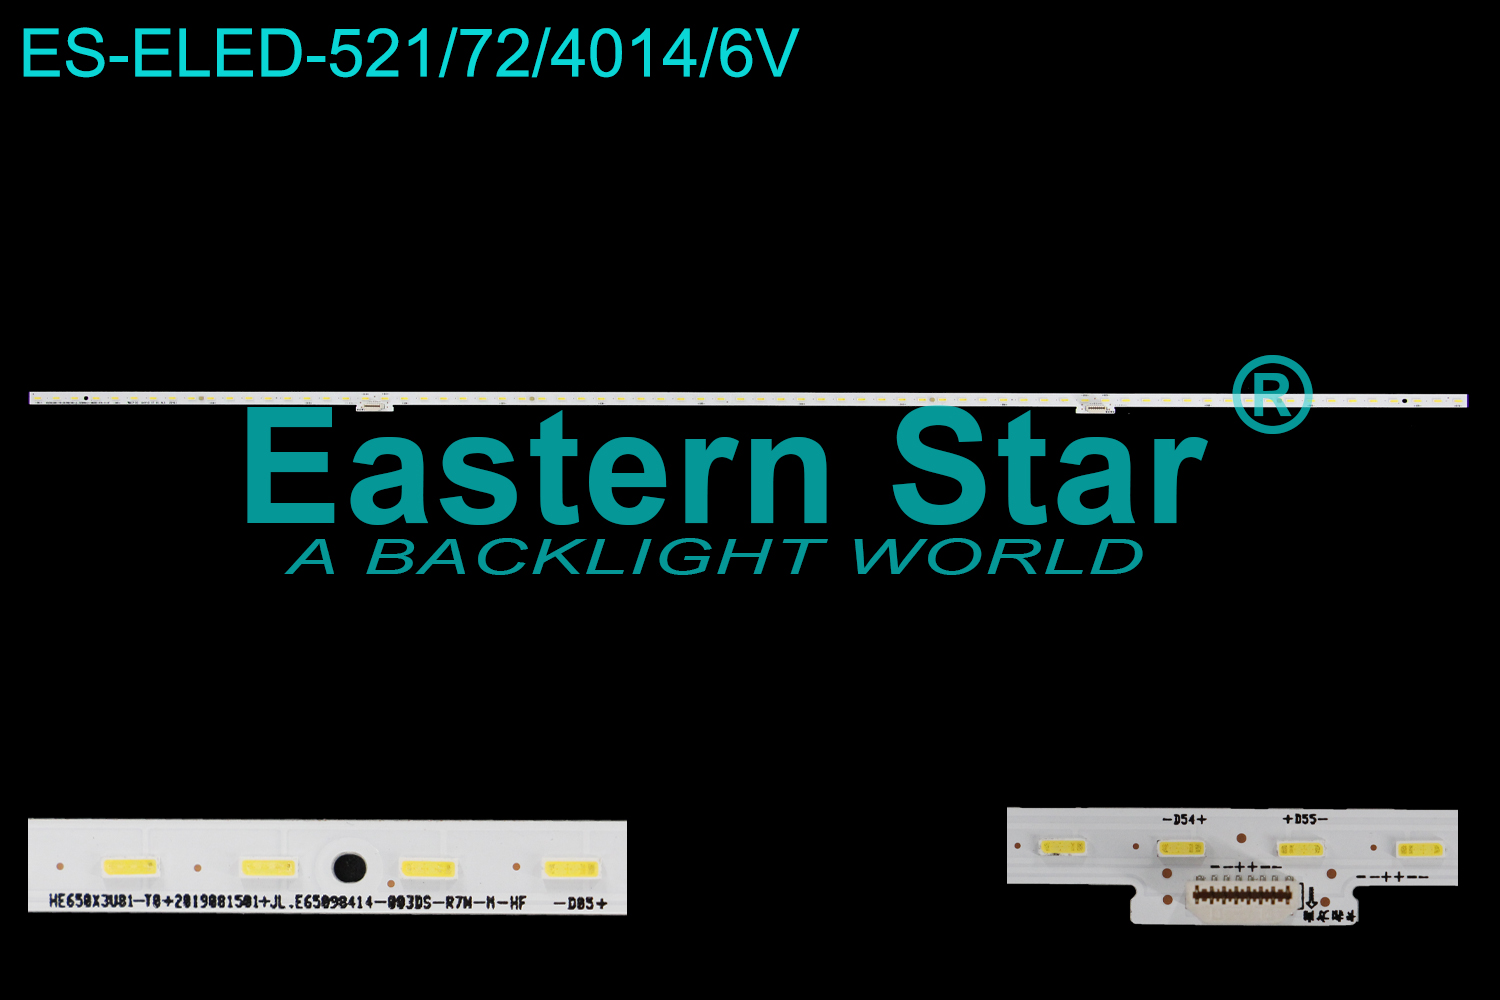 ES-ELED-521 ELED/EDGE TV backlight use for 65'' Hisense 65E4F HE650X3U81-T0-2019081501+JL.E65098414-003DS-R7M-M-HF 1236633 HE65D0Z57999 GG-AG6 84G8BC58+84G8BC58 LED STRIPS(/)